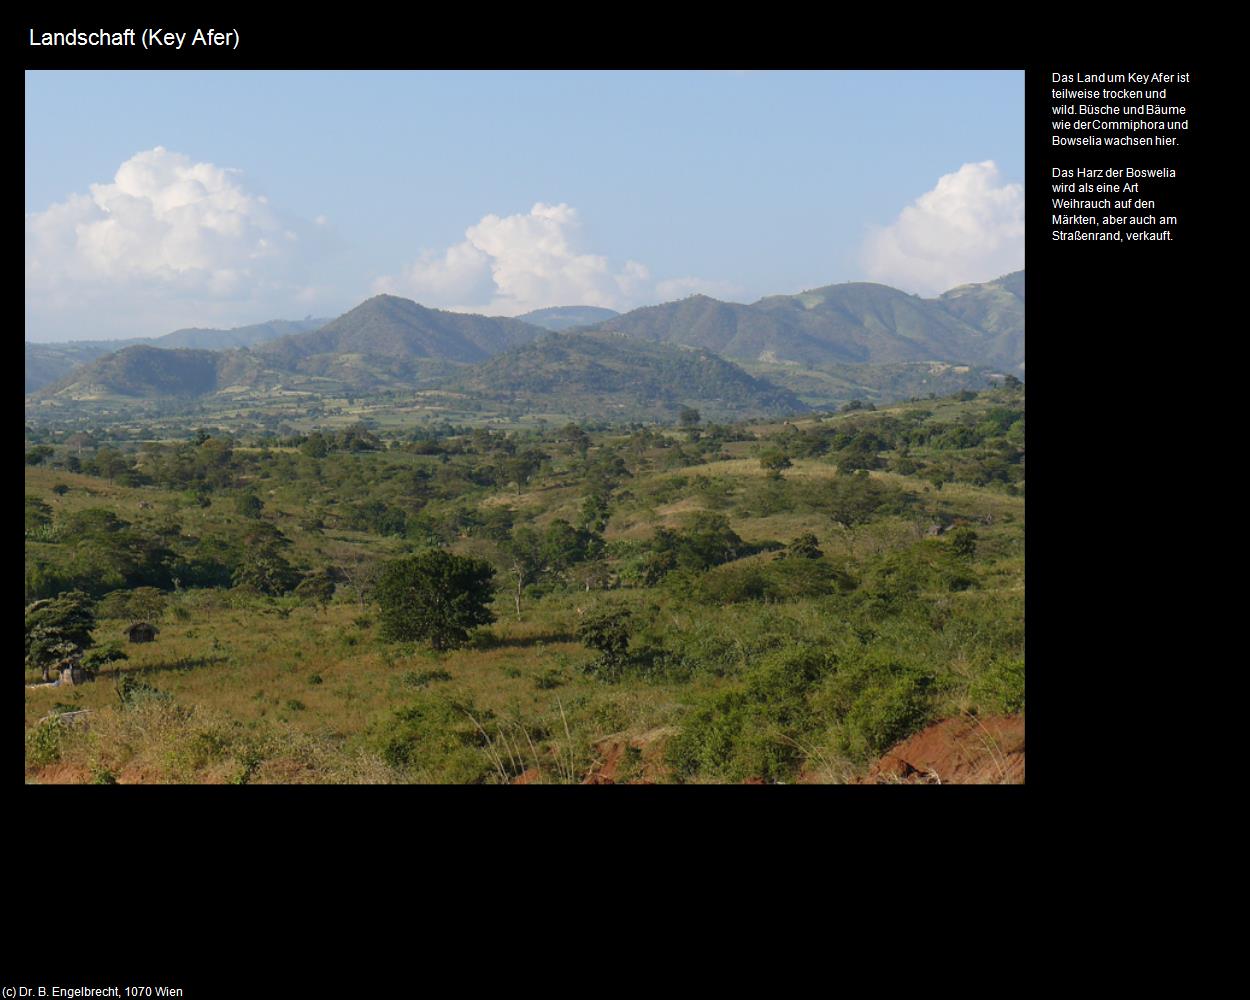 Landschaft (Key Afer) in Äthiopien